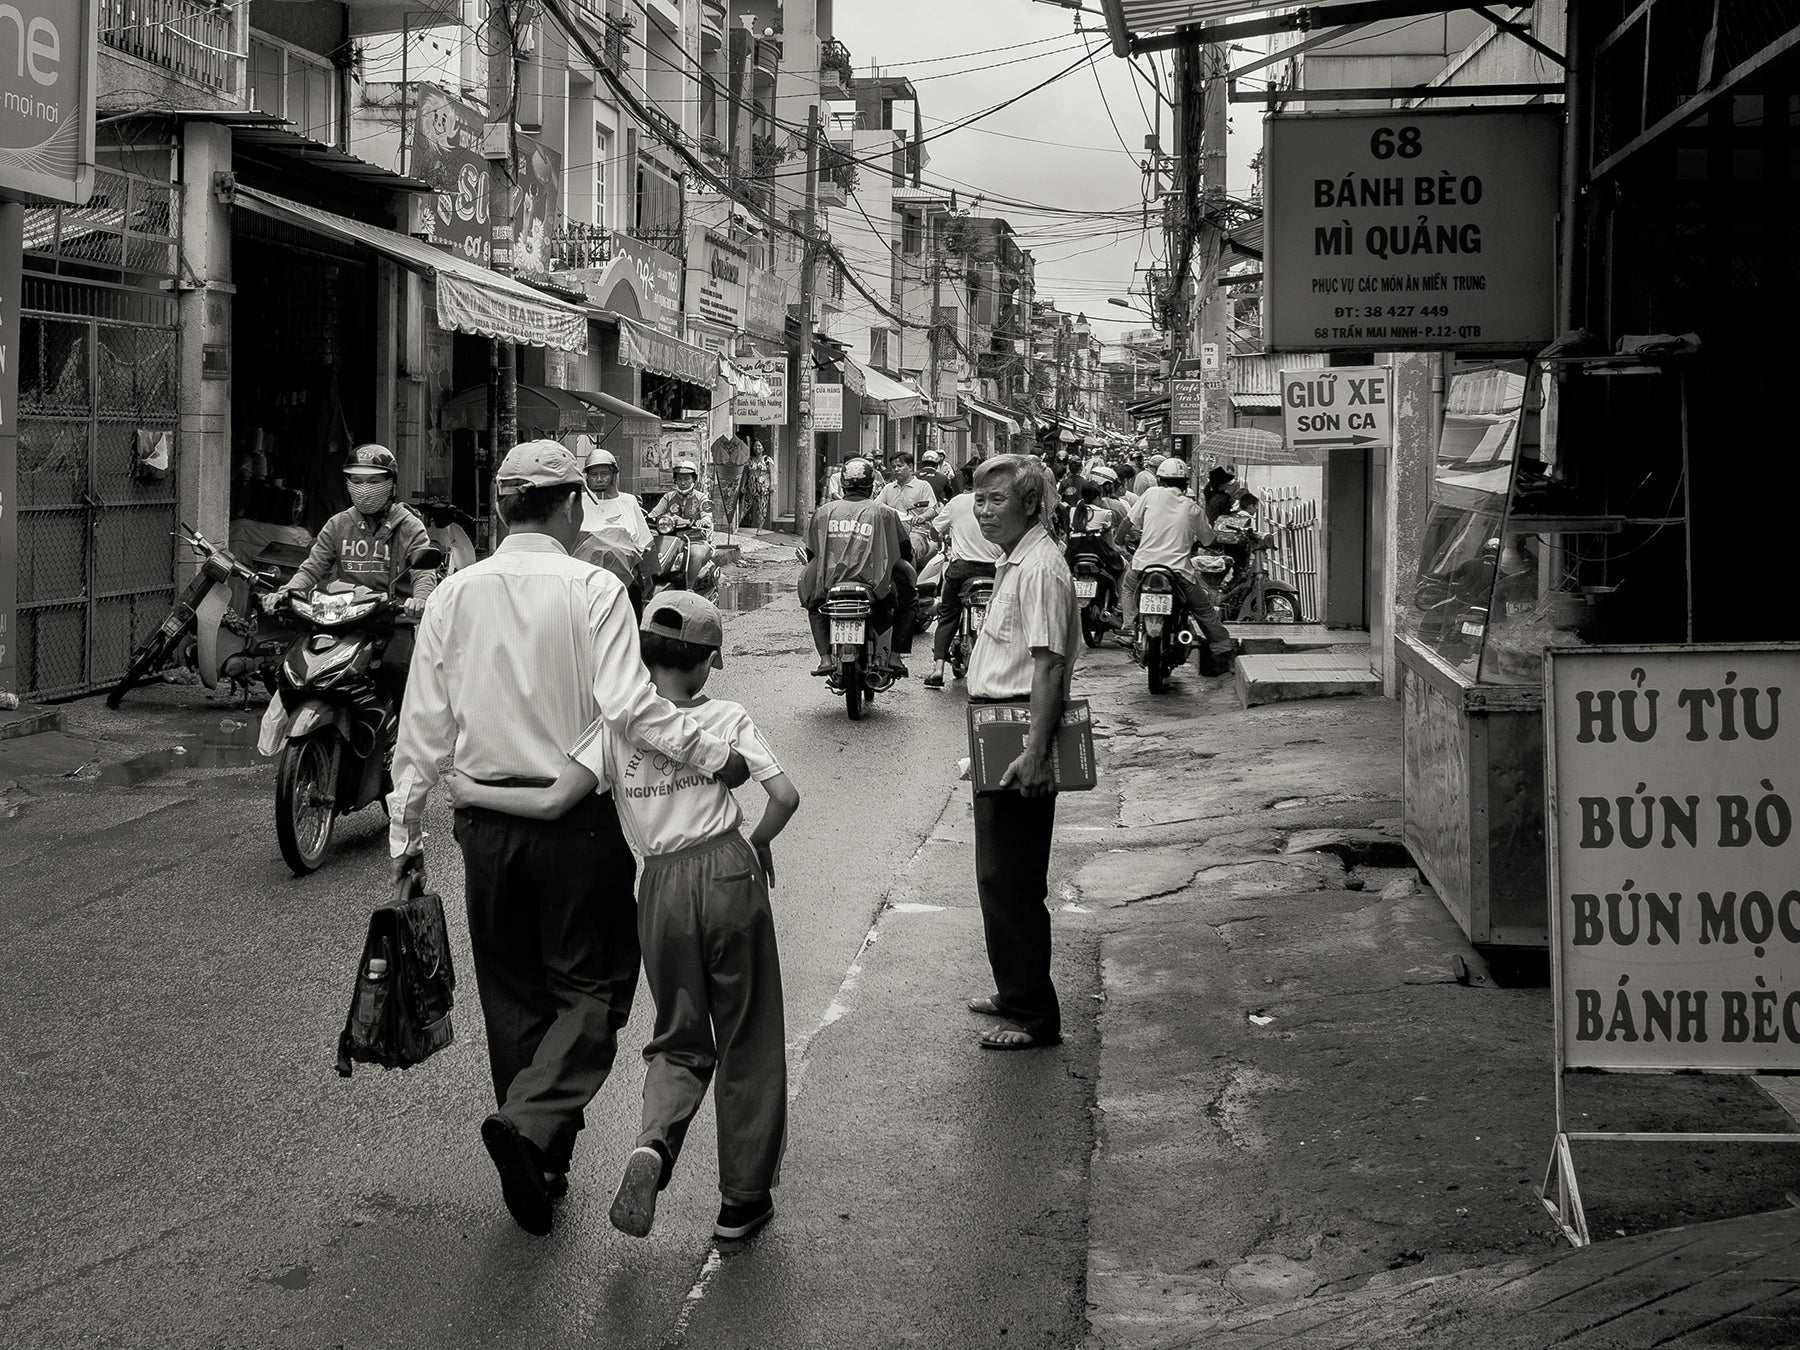 Back streets of Saigon